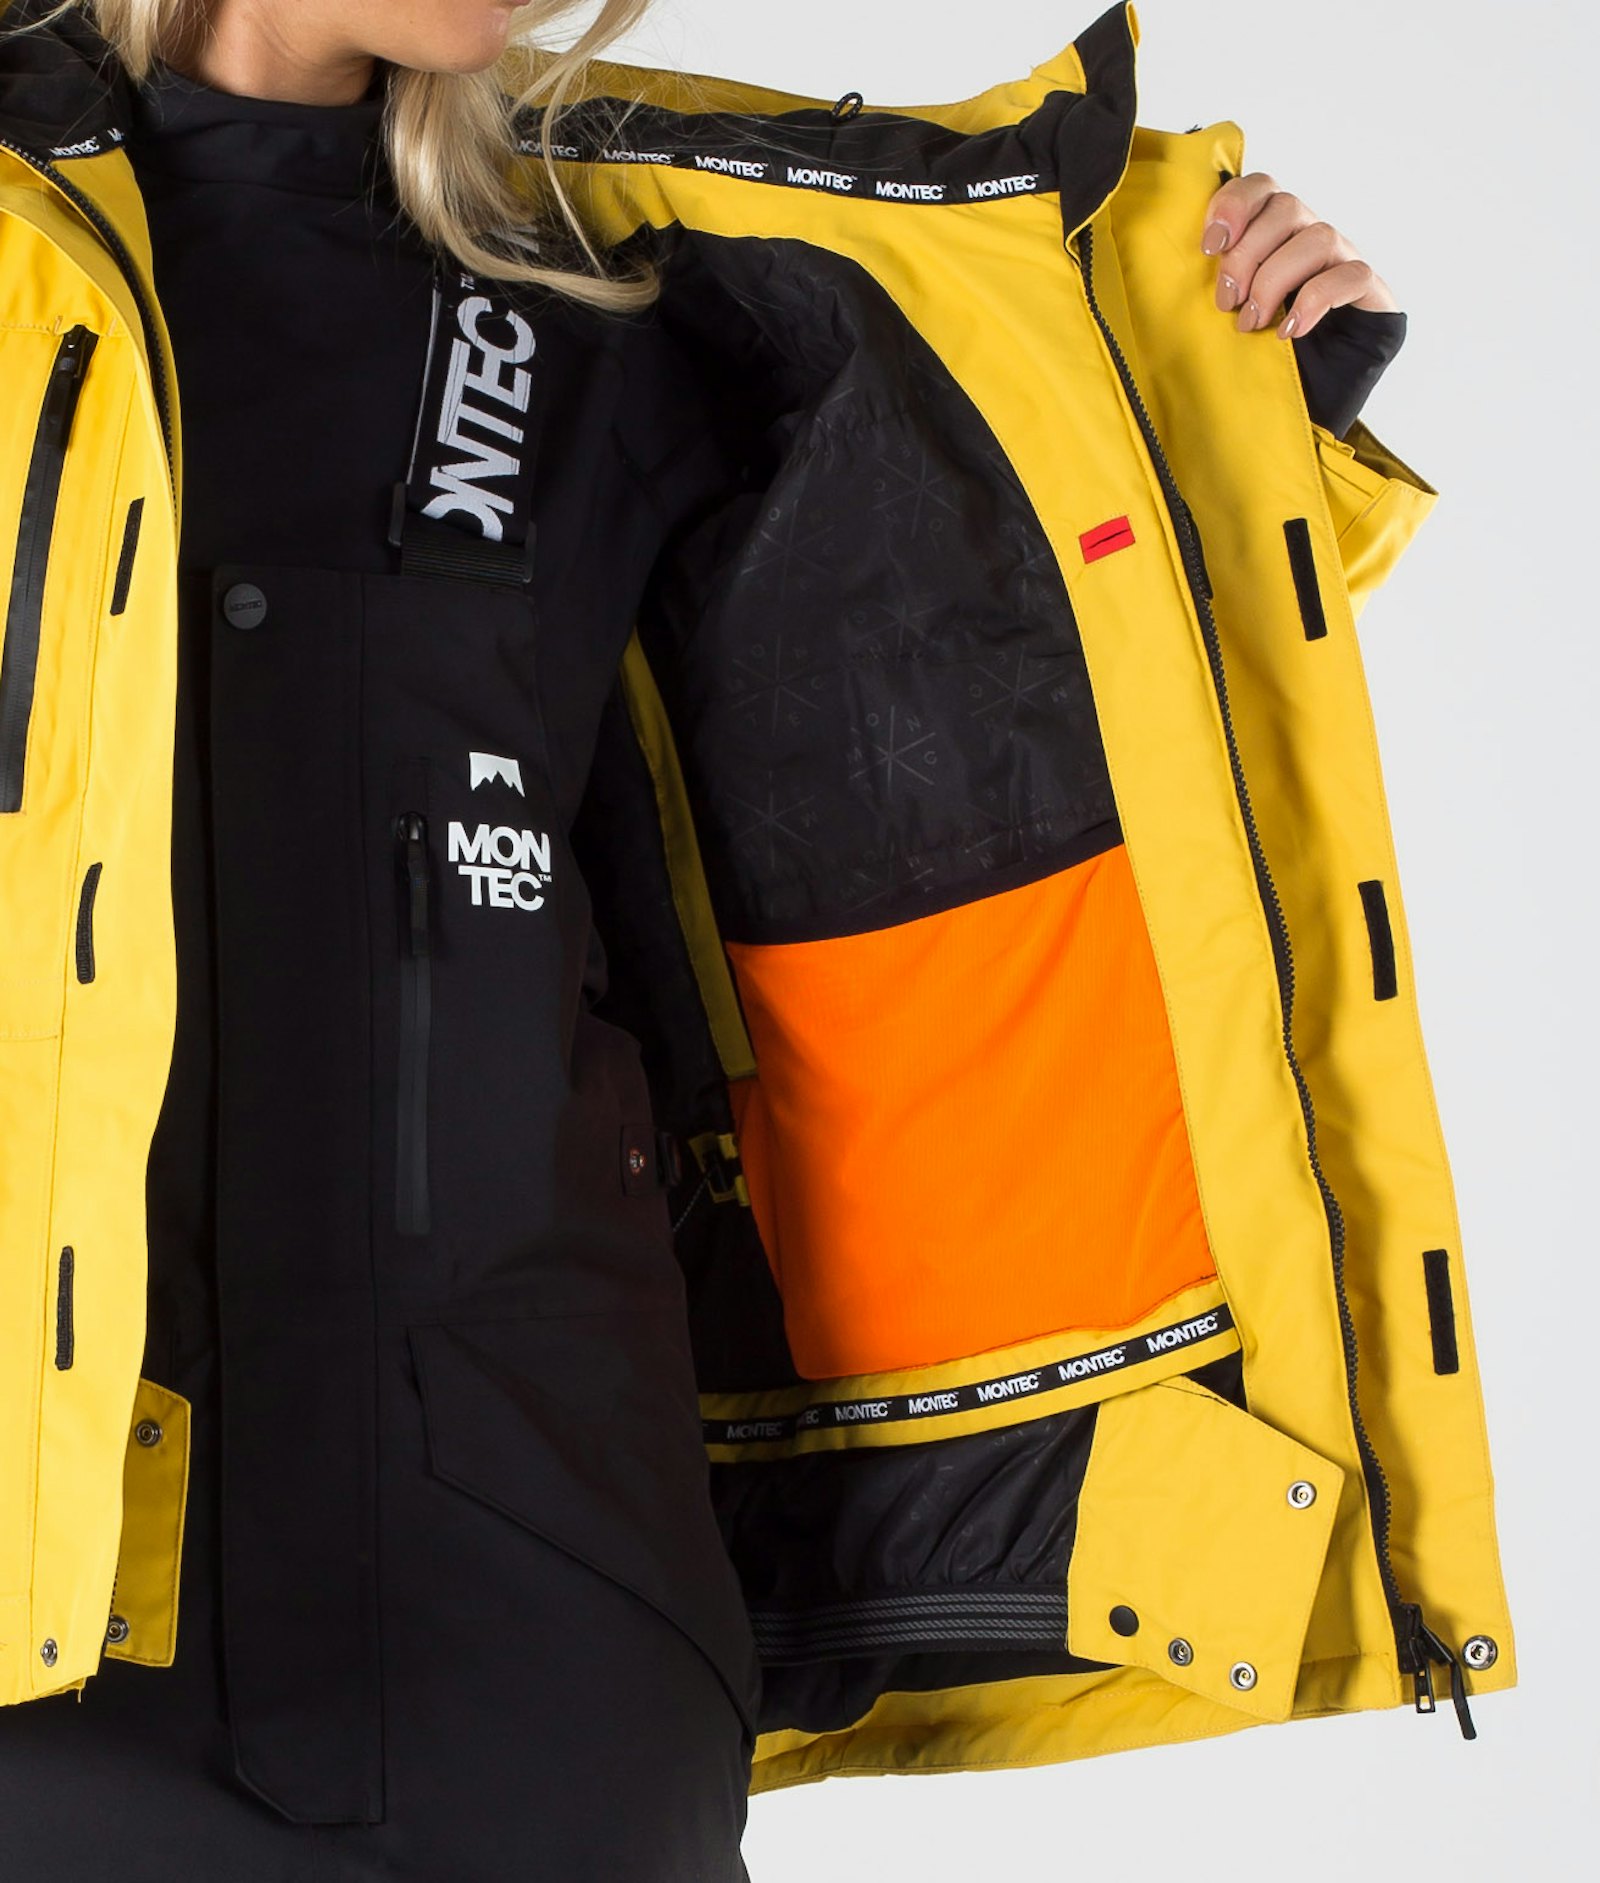 Fawk W 2019 Veste Snowboard Femme Yellow